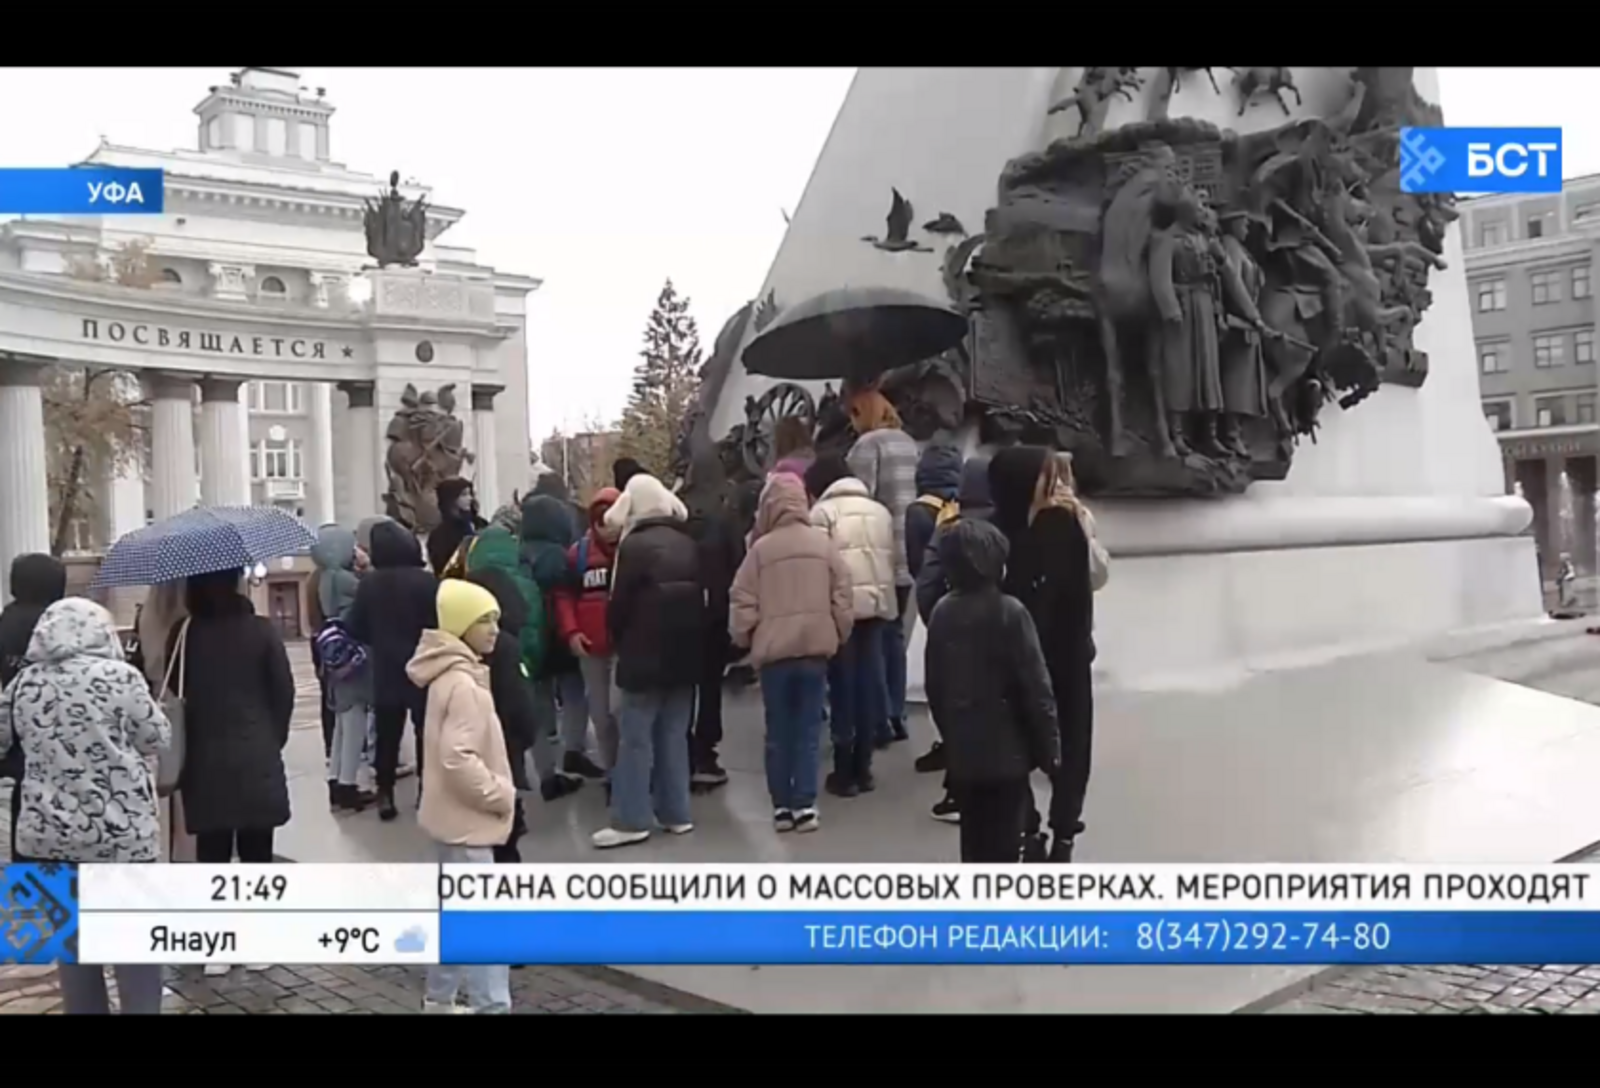 Туристический автобус «Терра Башкирия» в Уфе впервые остановился у памятника Шаймуратову